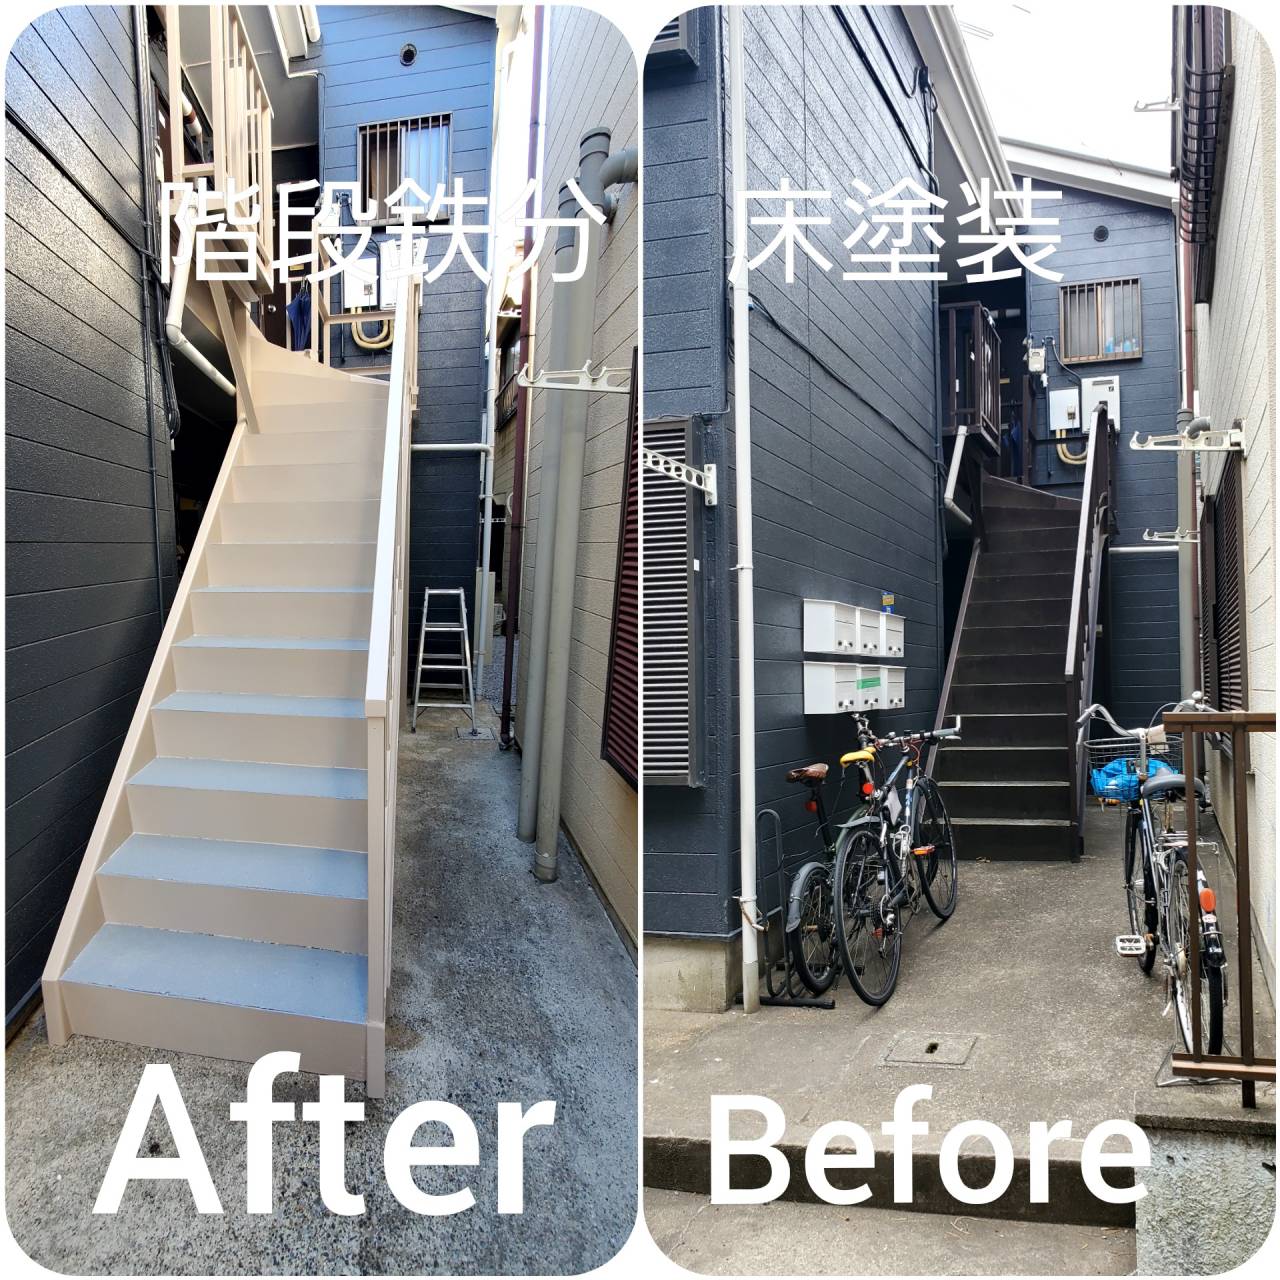 アパートのオーナーさんからの御依頼で鉄部の階段塗装工事を行いました。自社は【遠藤建装】は、どんな御依も、見積もり無料で、私が確実に現場の確認しますので、どうぞ千葉県市川市、外壁塗装専門の遠藤建装宜しくお願い致します。